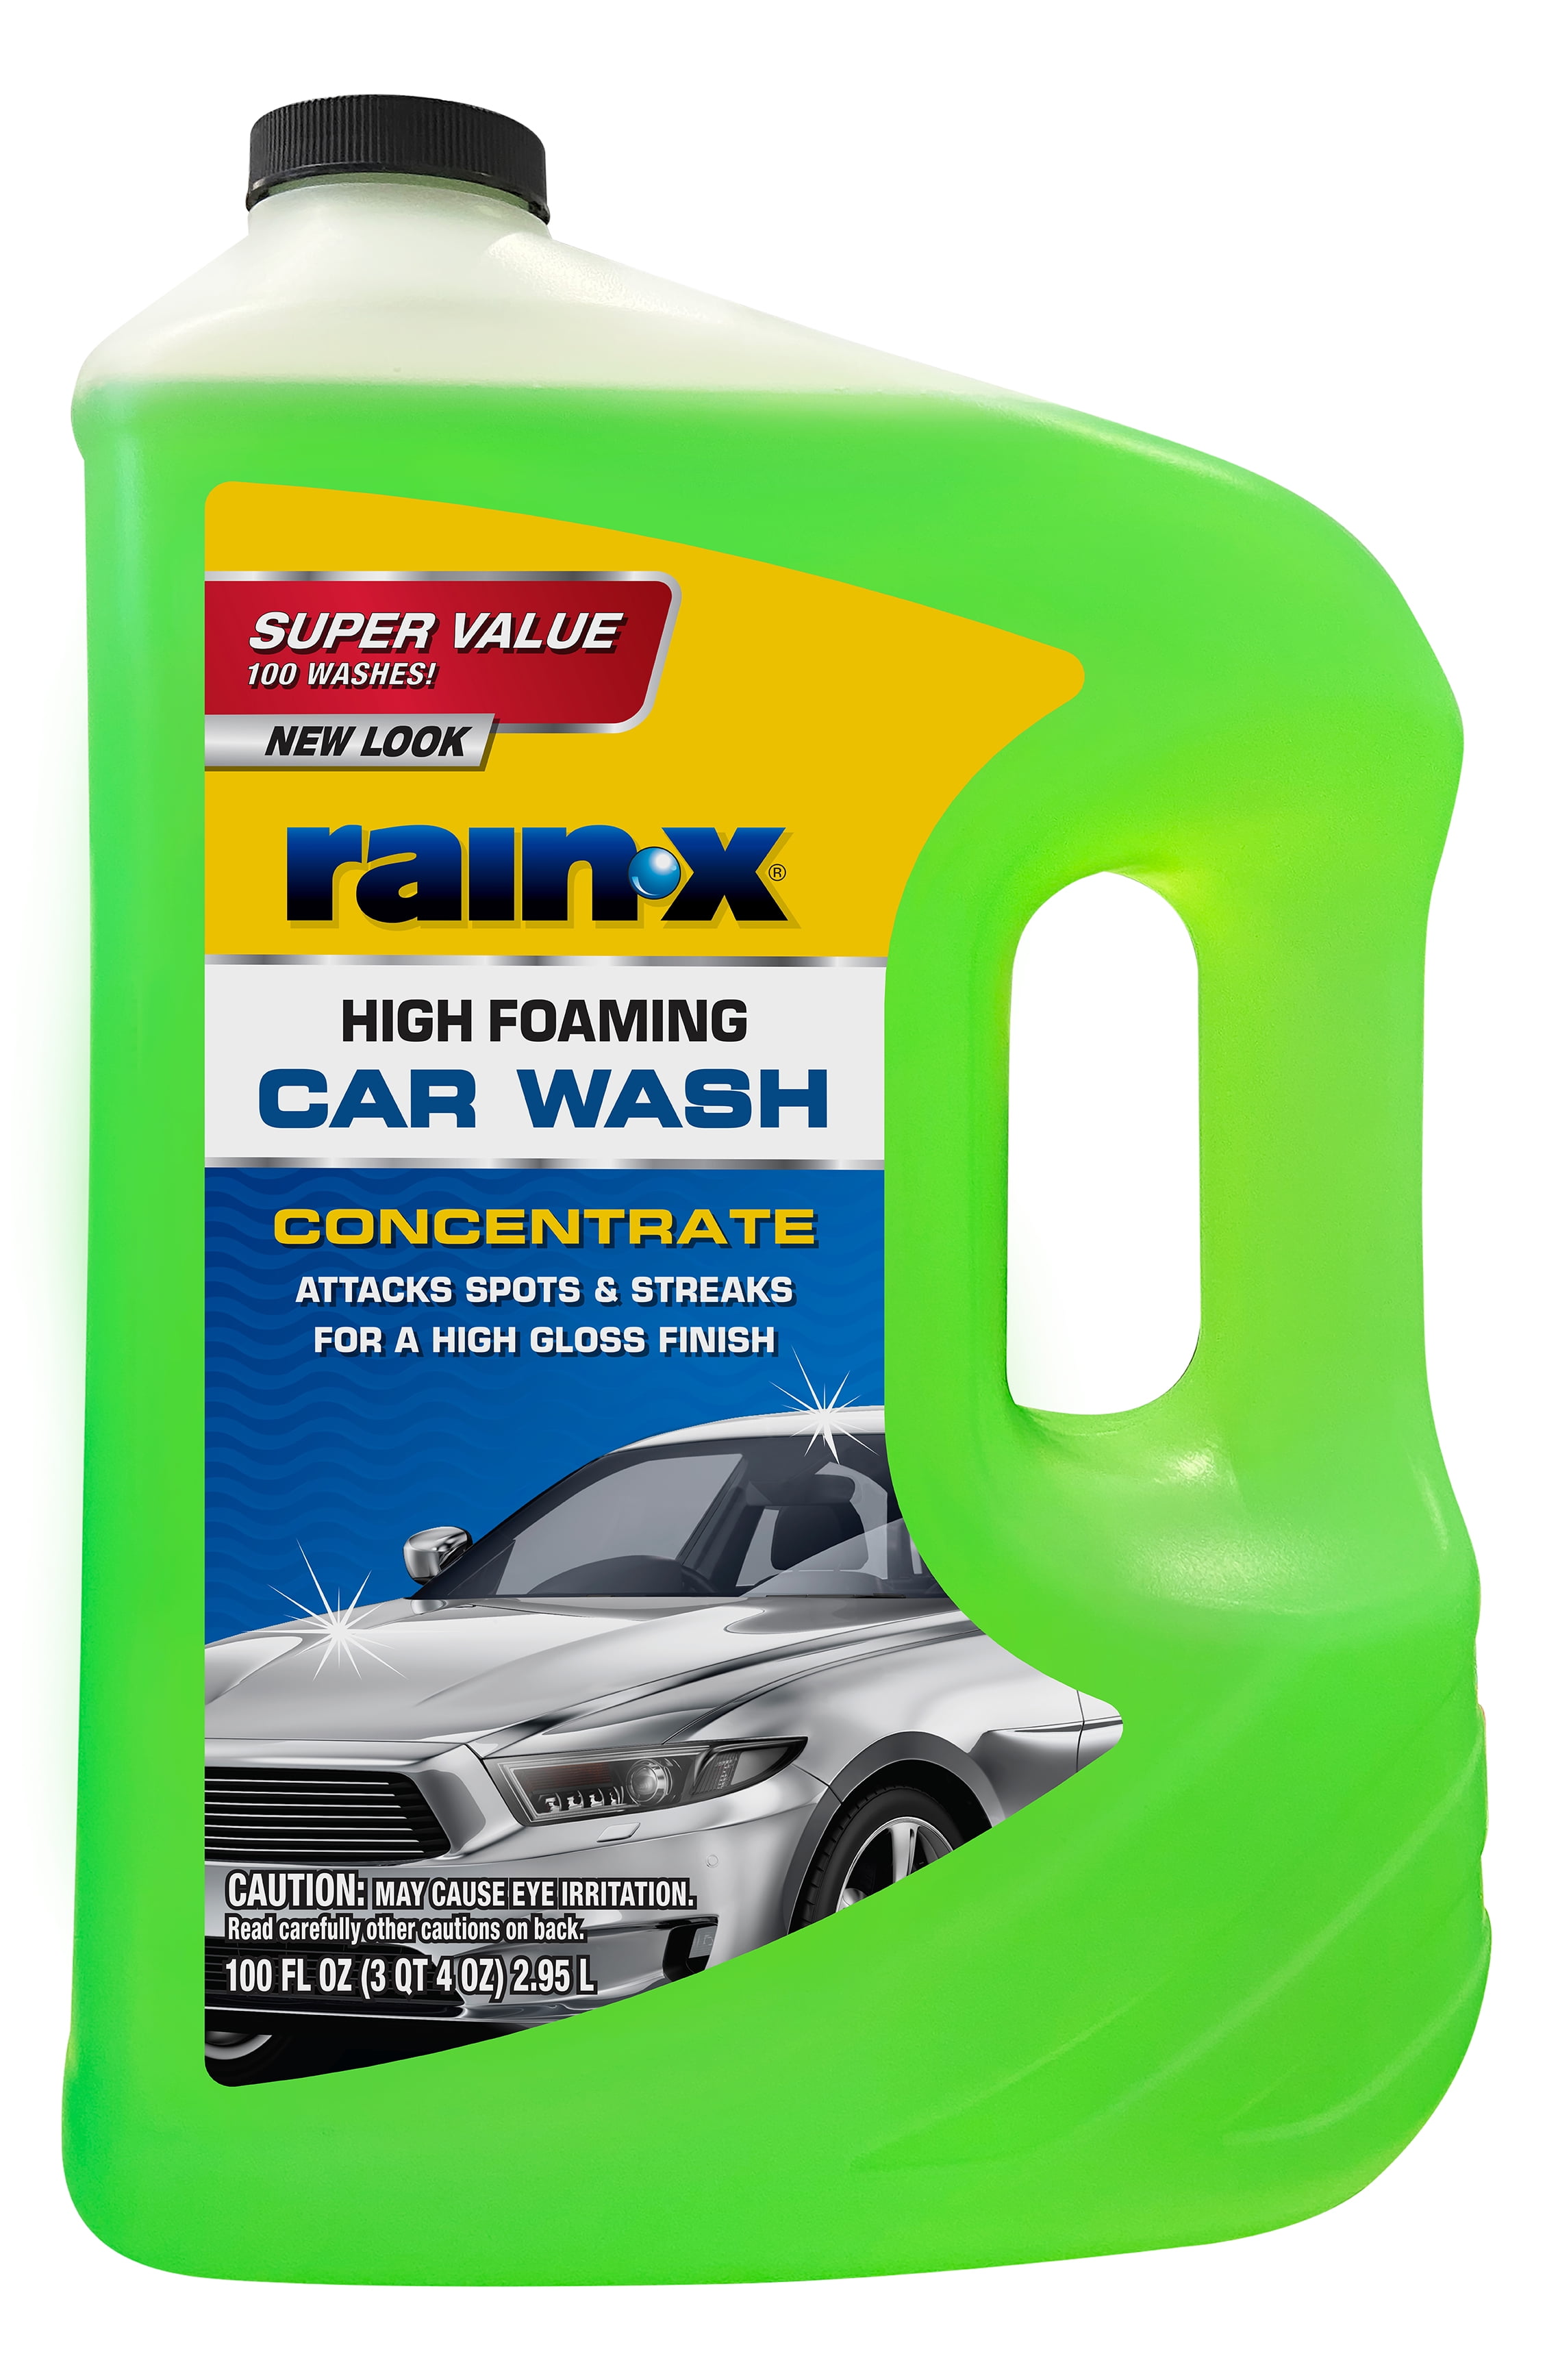 May's Car Wash